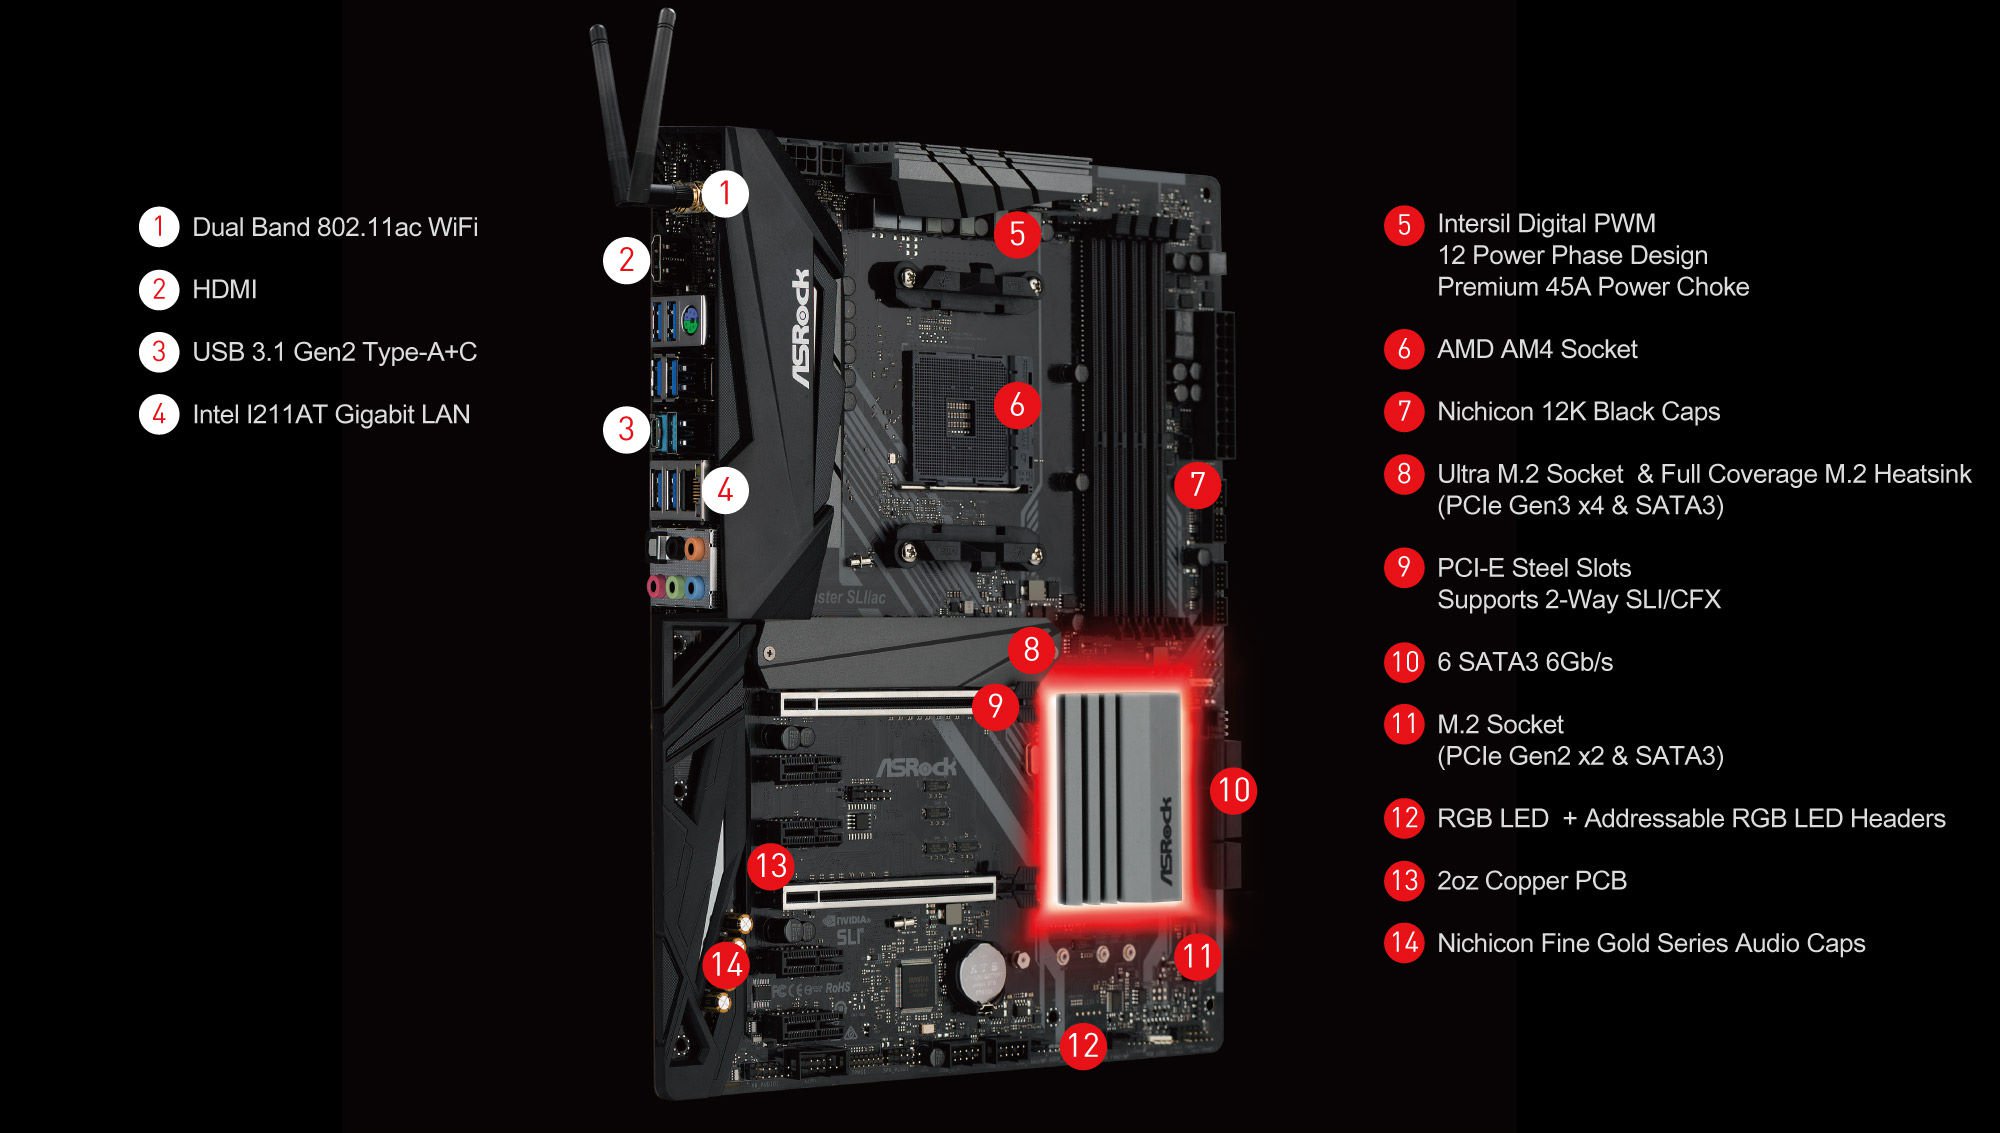 ASRock X470 Master SLI/AC AM4 AMD Promontory X470 SATA 6Gb/s USB 3.1 HDMI ATX AMD Motherboard